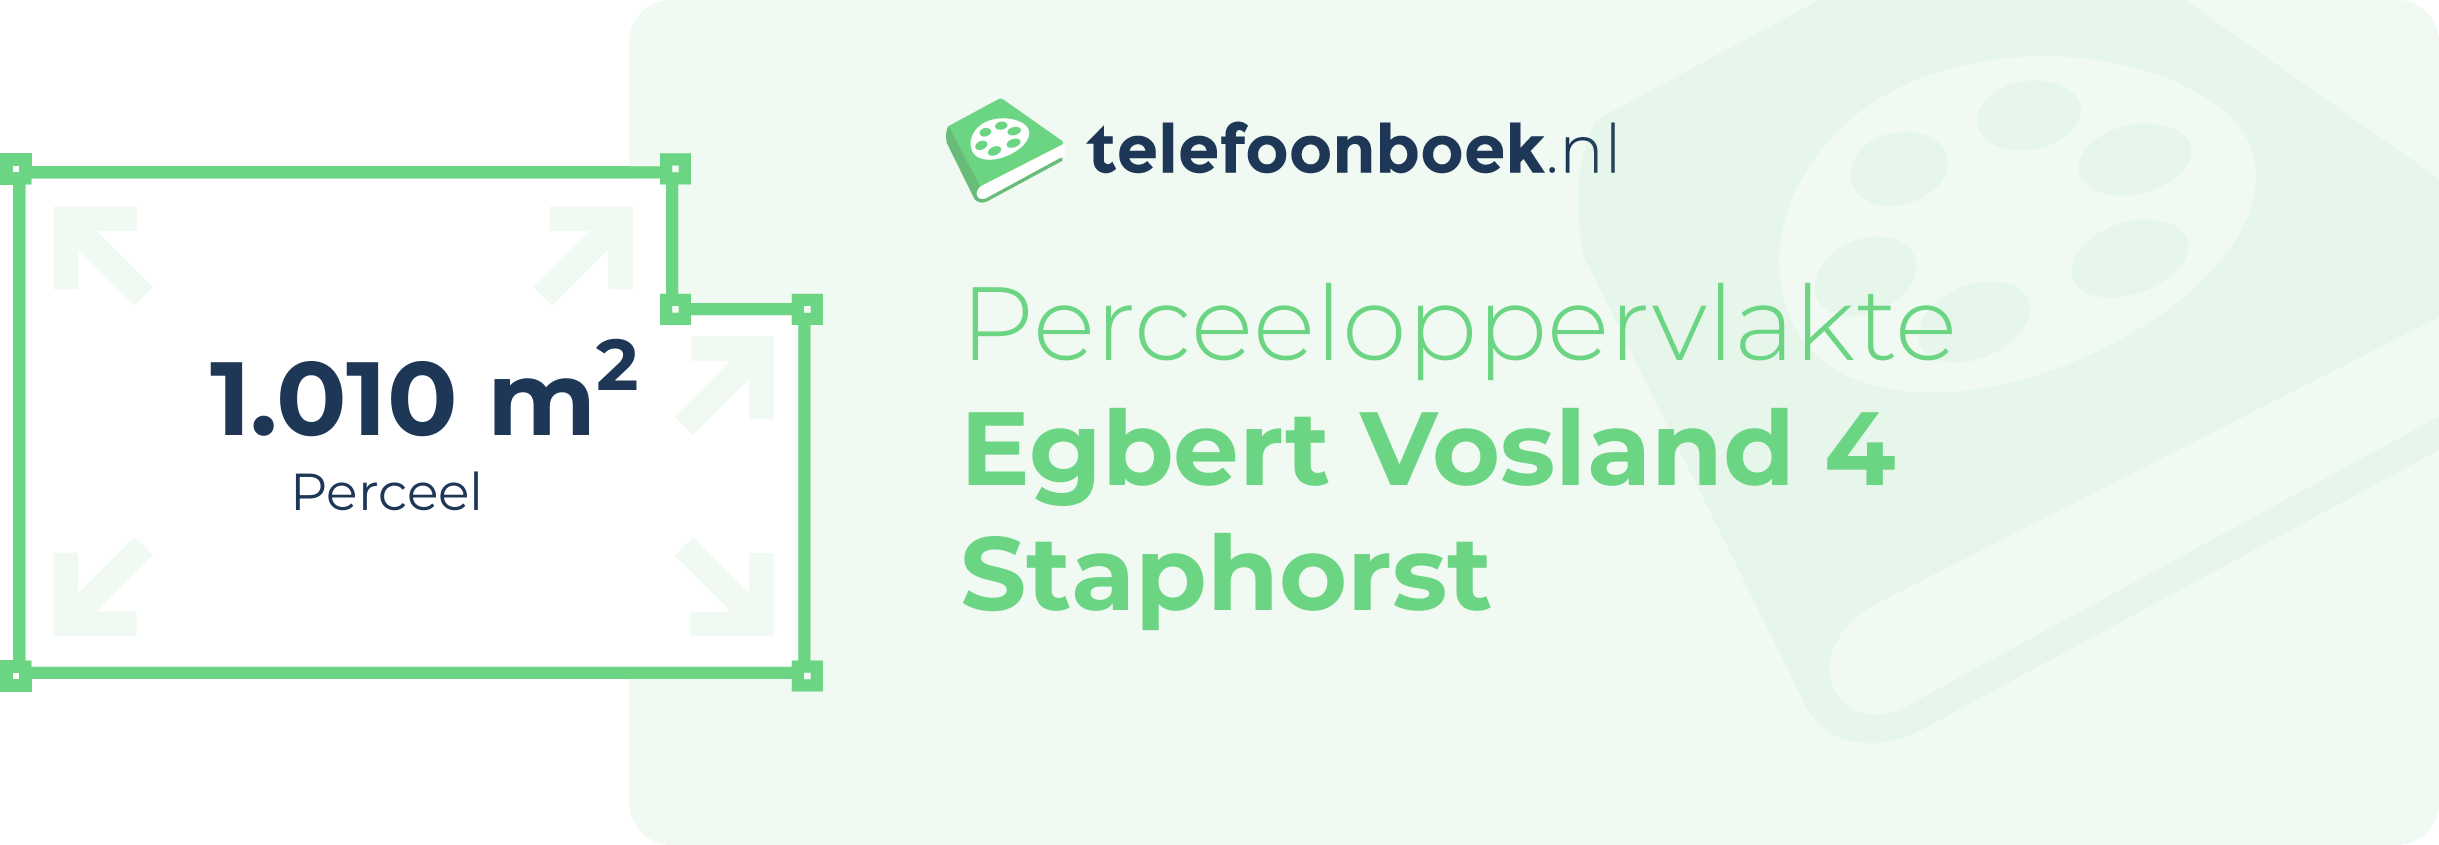 Perceeloppervlakte Egbert Vosland 4 Staphorst